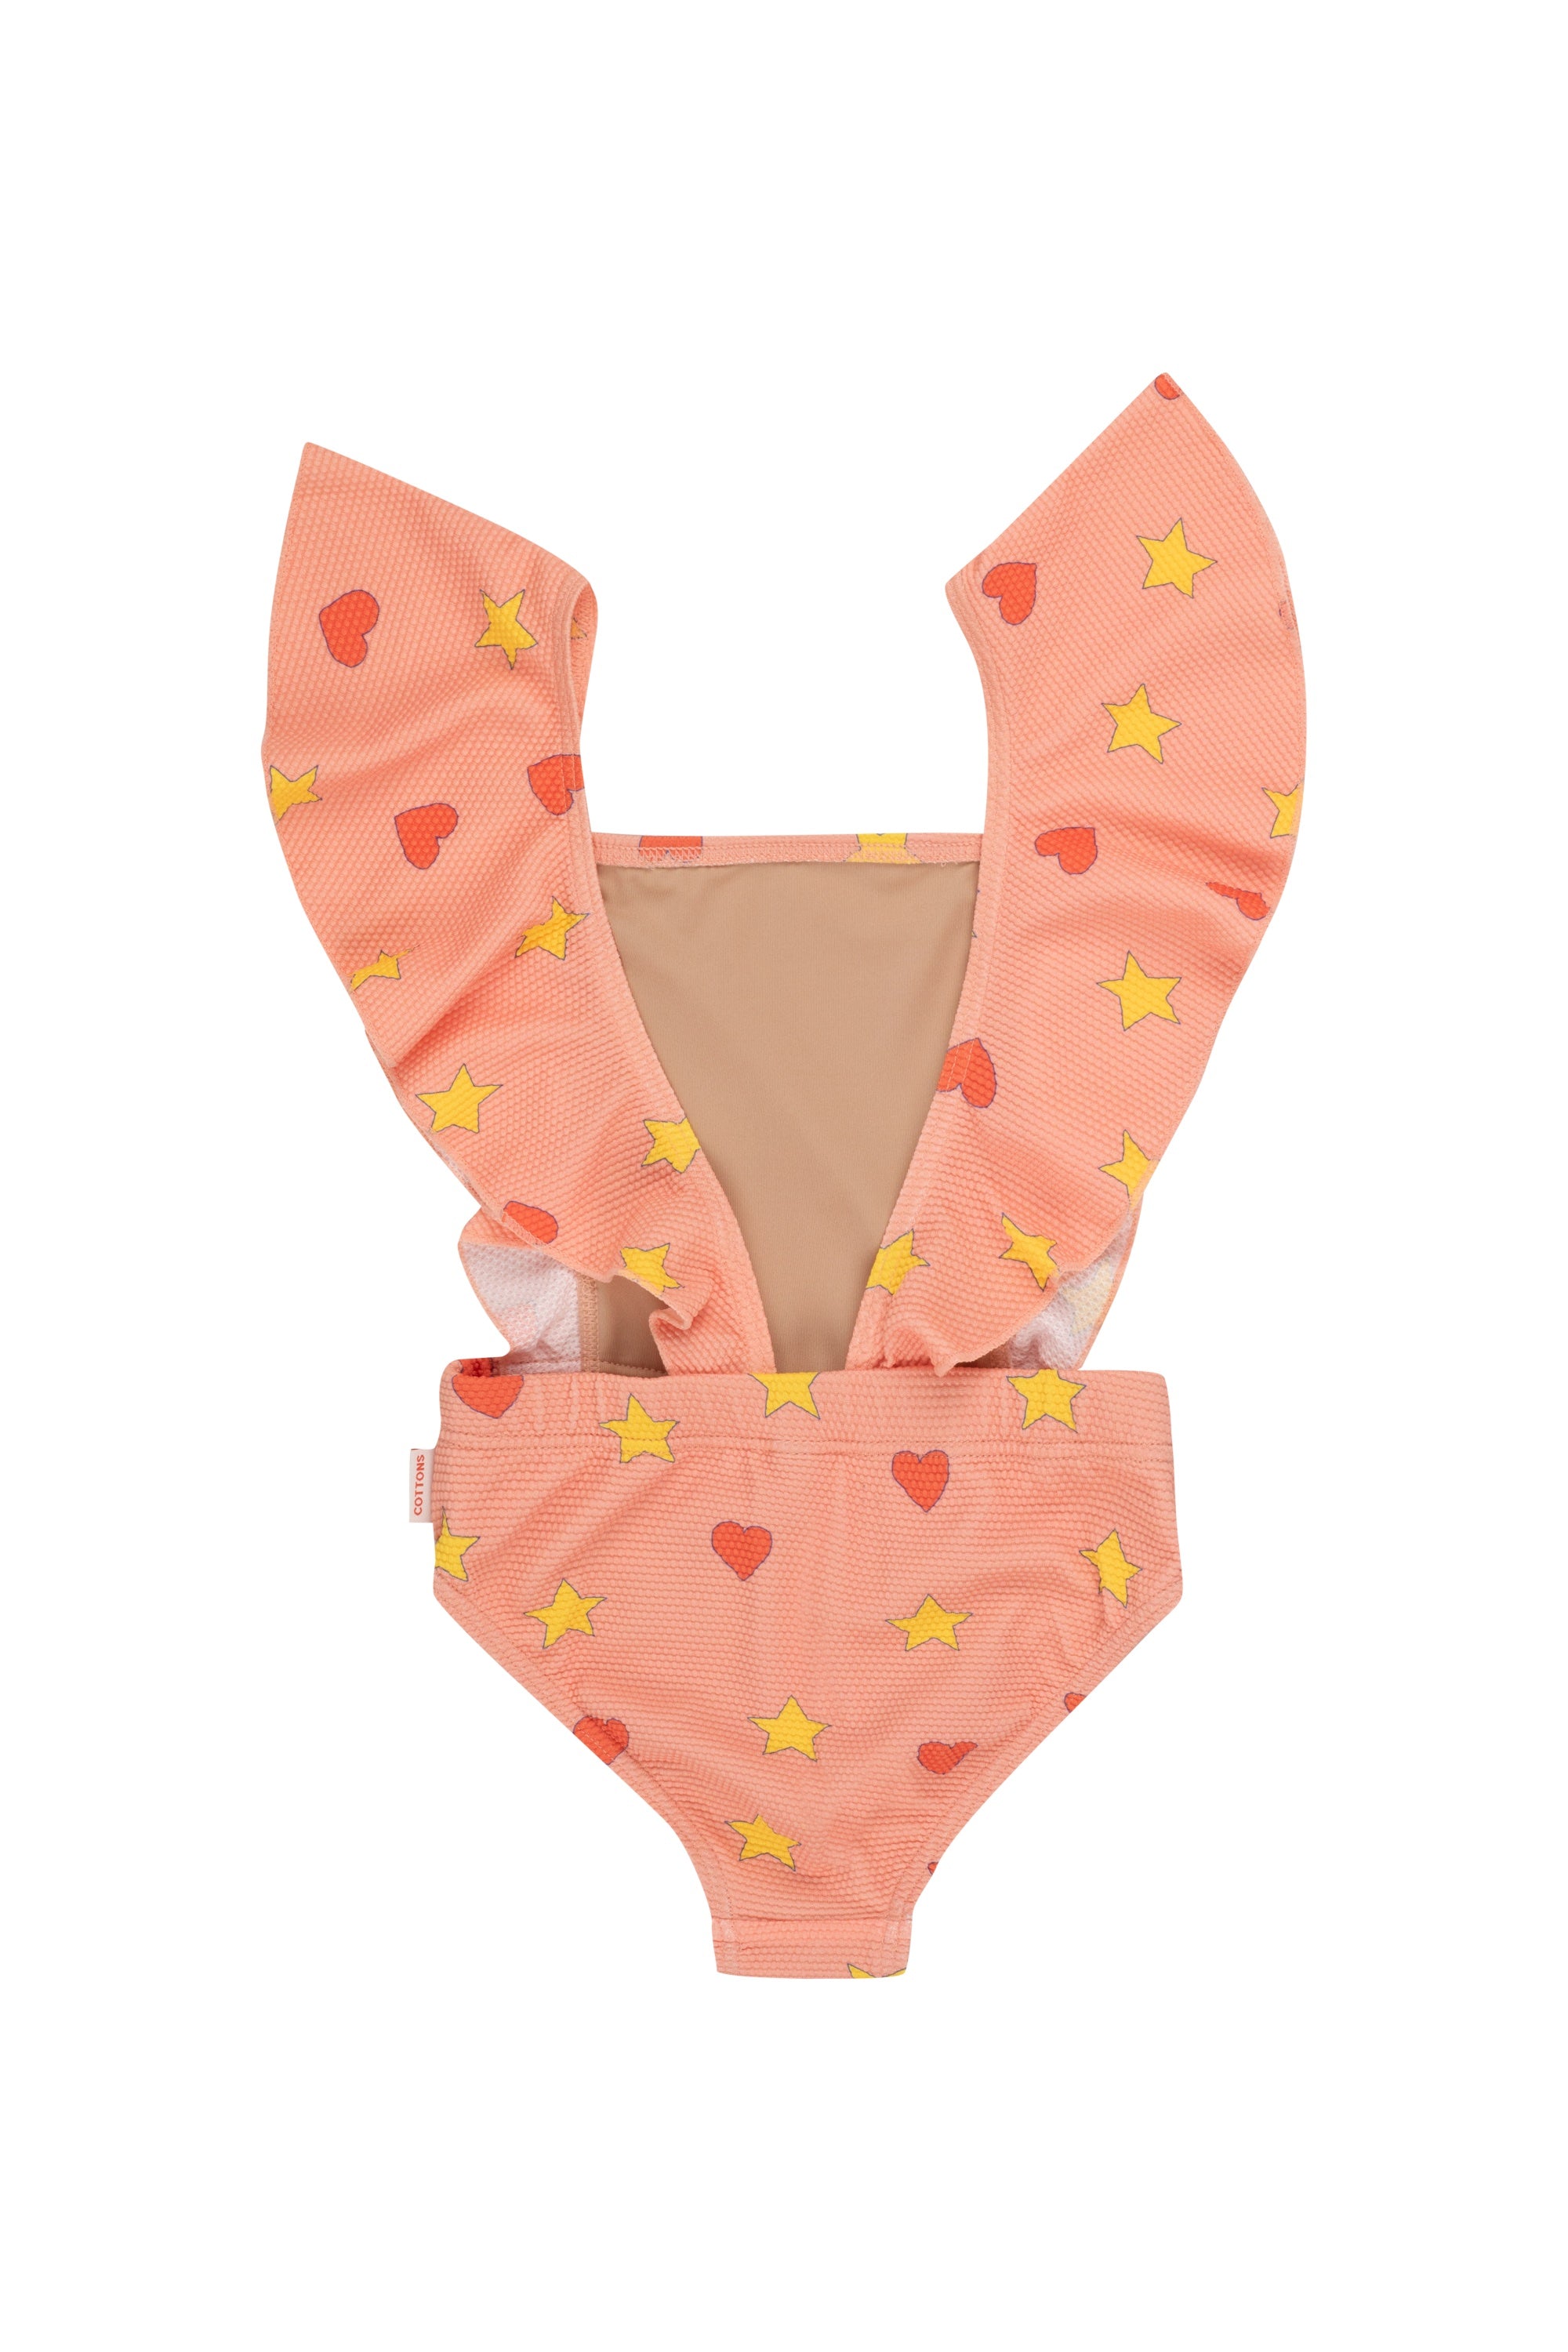 Tiny Cottons Hearts Stars Swimsuit - Papaya